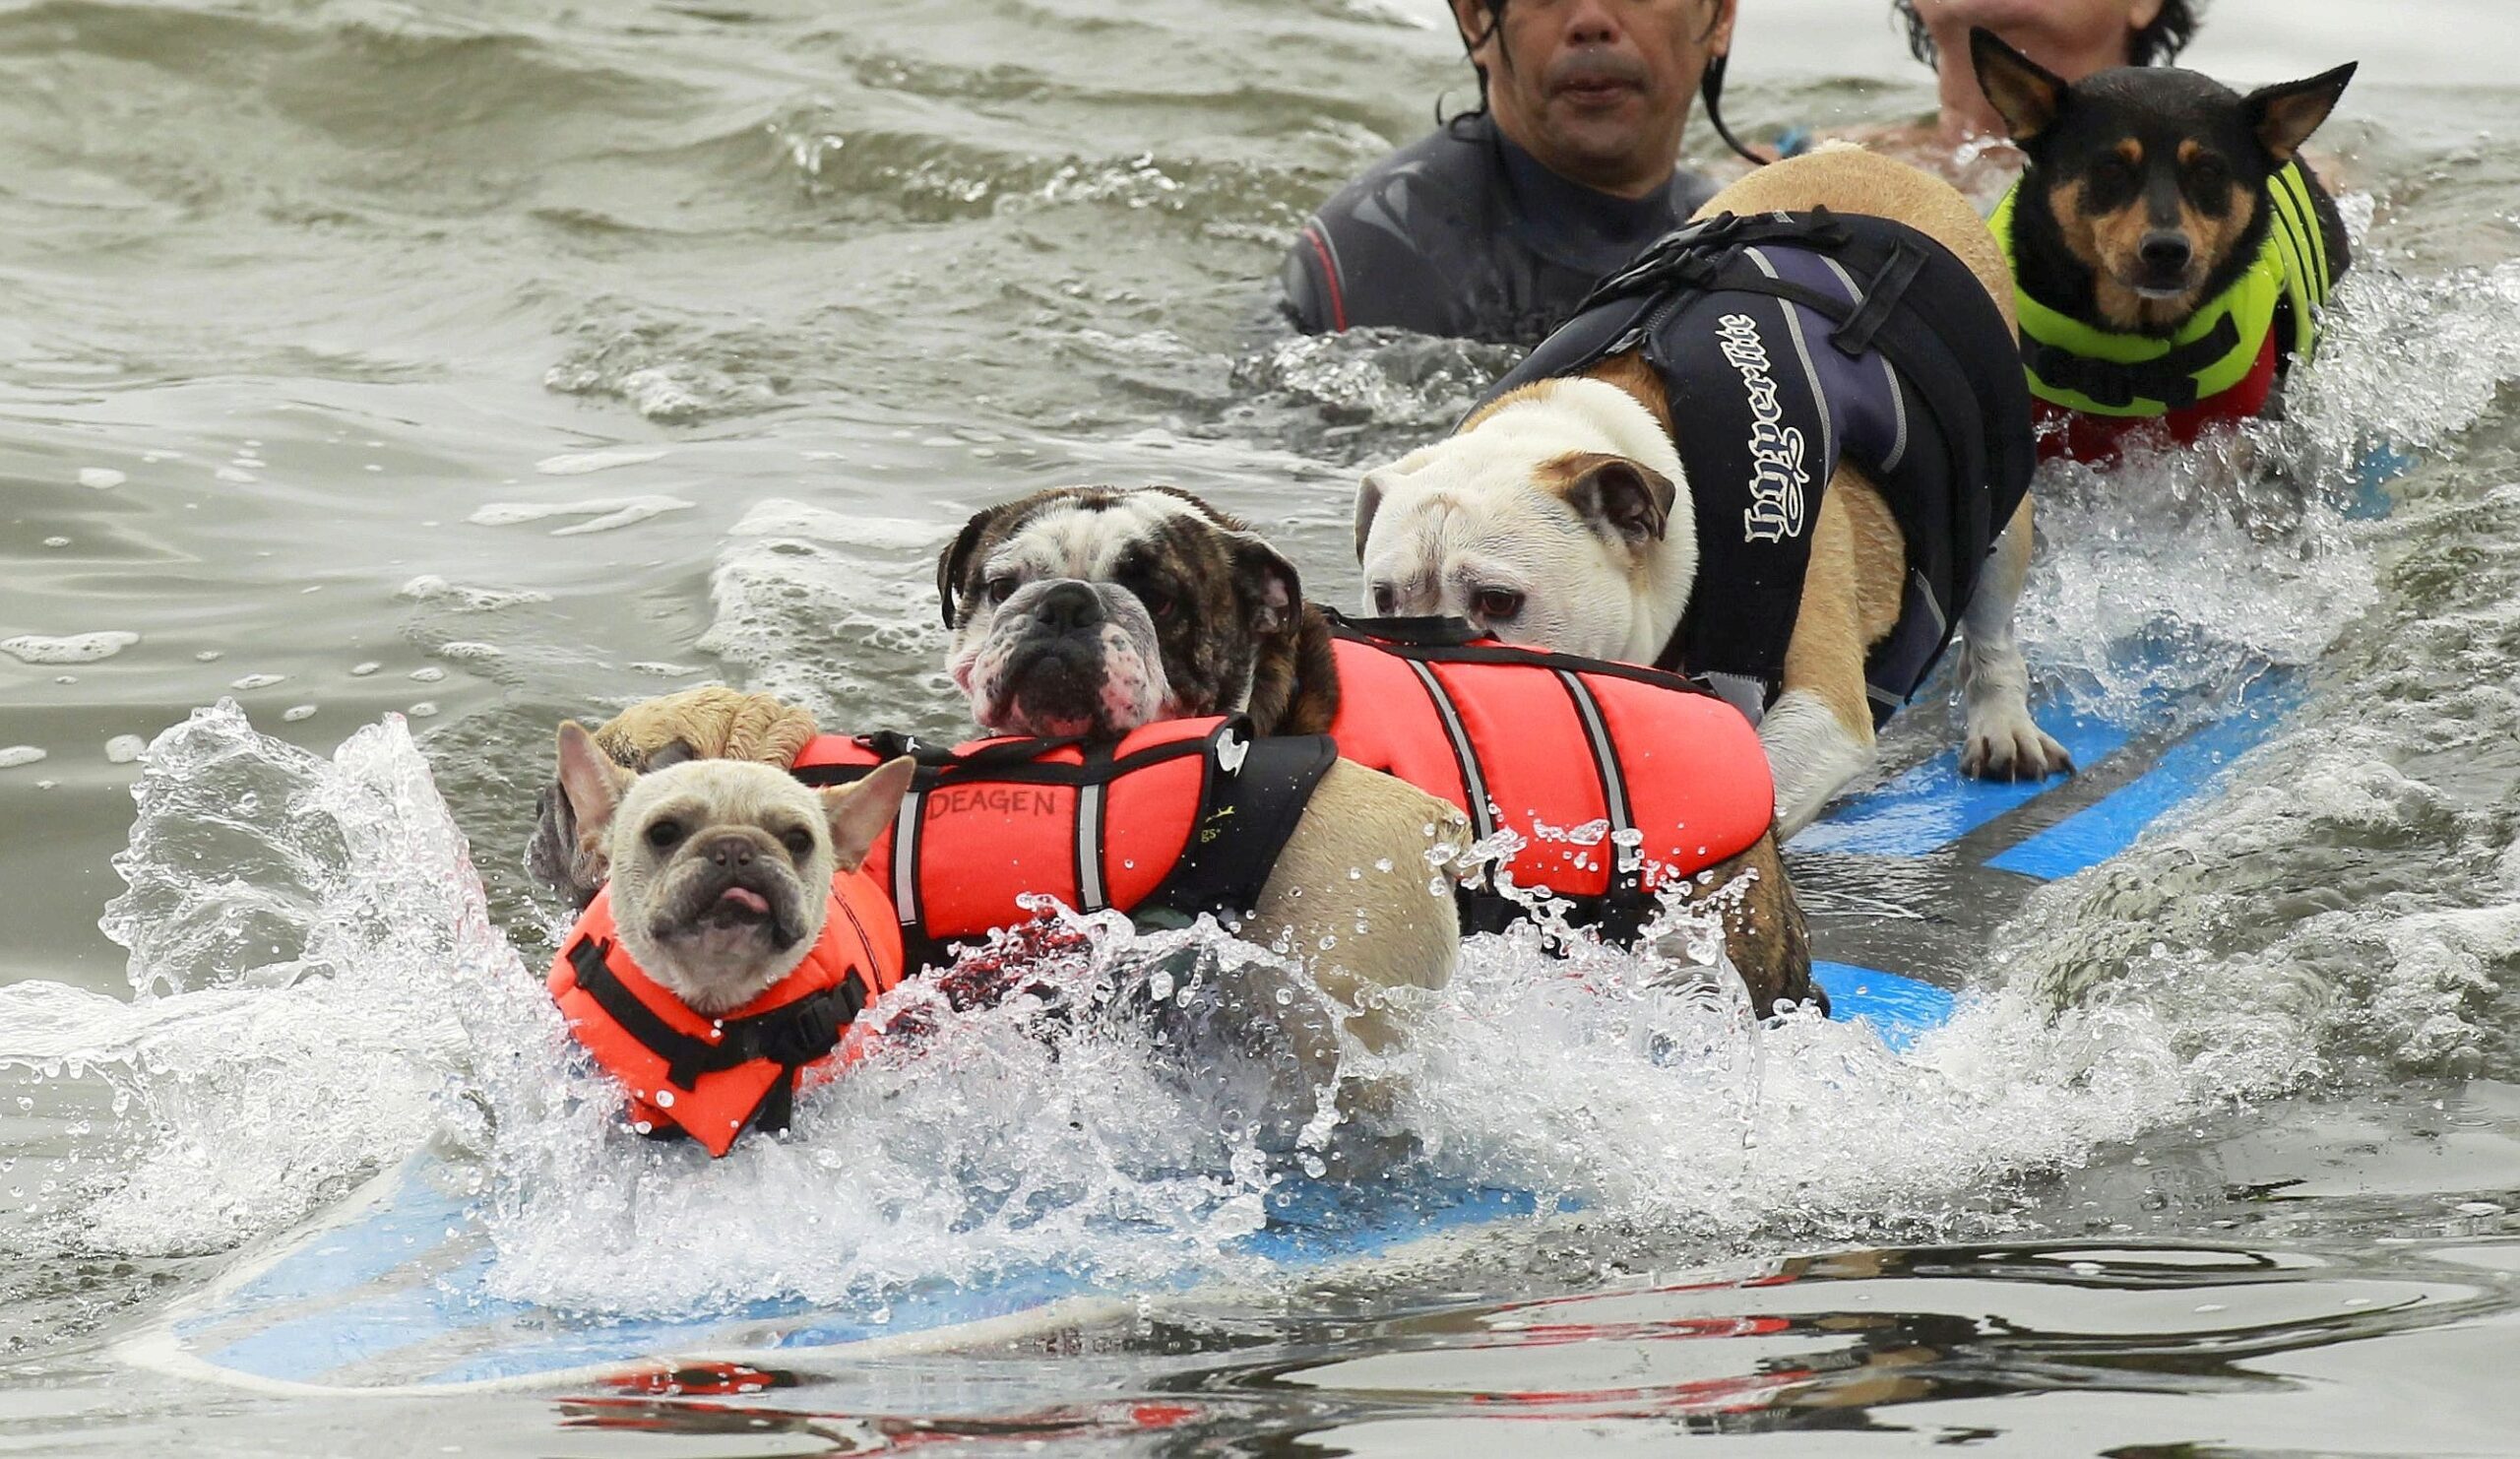 ...Ende: In Huntington Beach haben sogar fünf Hunde gemeinsam gesurft. Es ist nicht überliefert, wie lustig sie das fanden. Gar nicht...